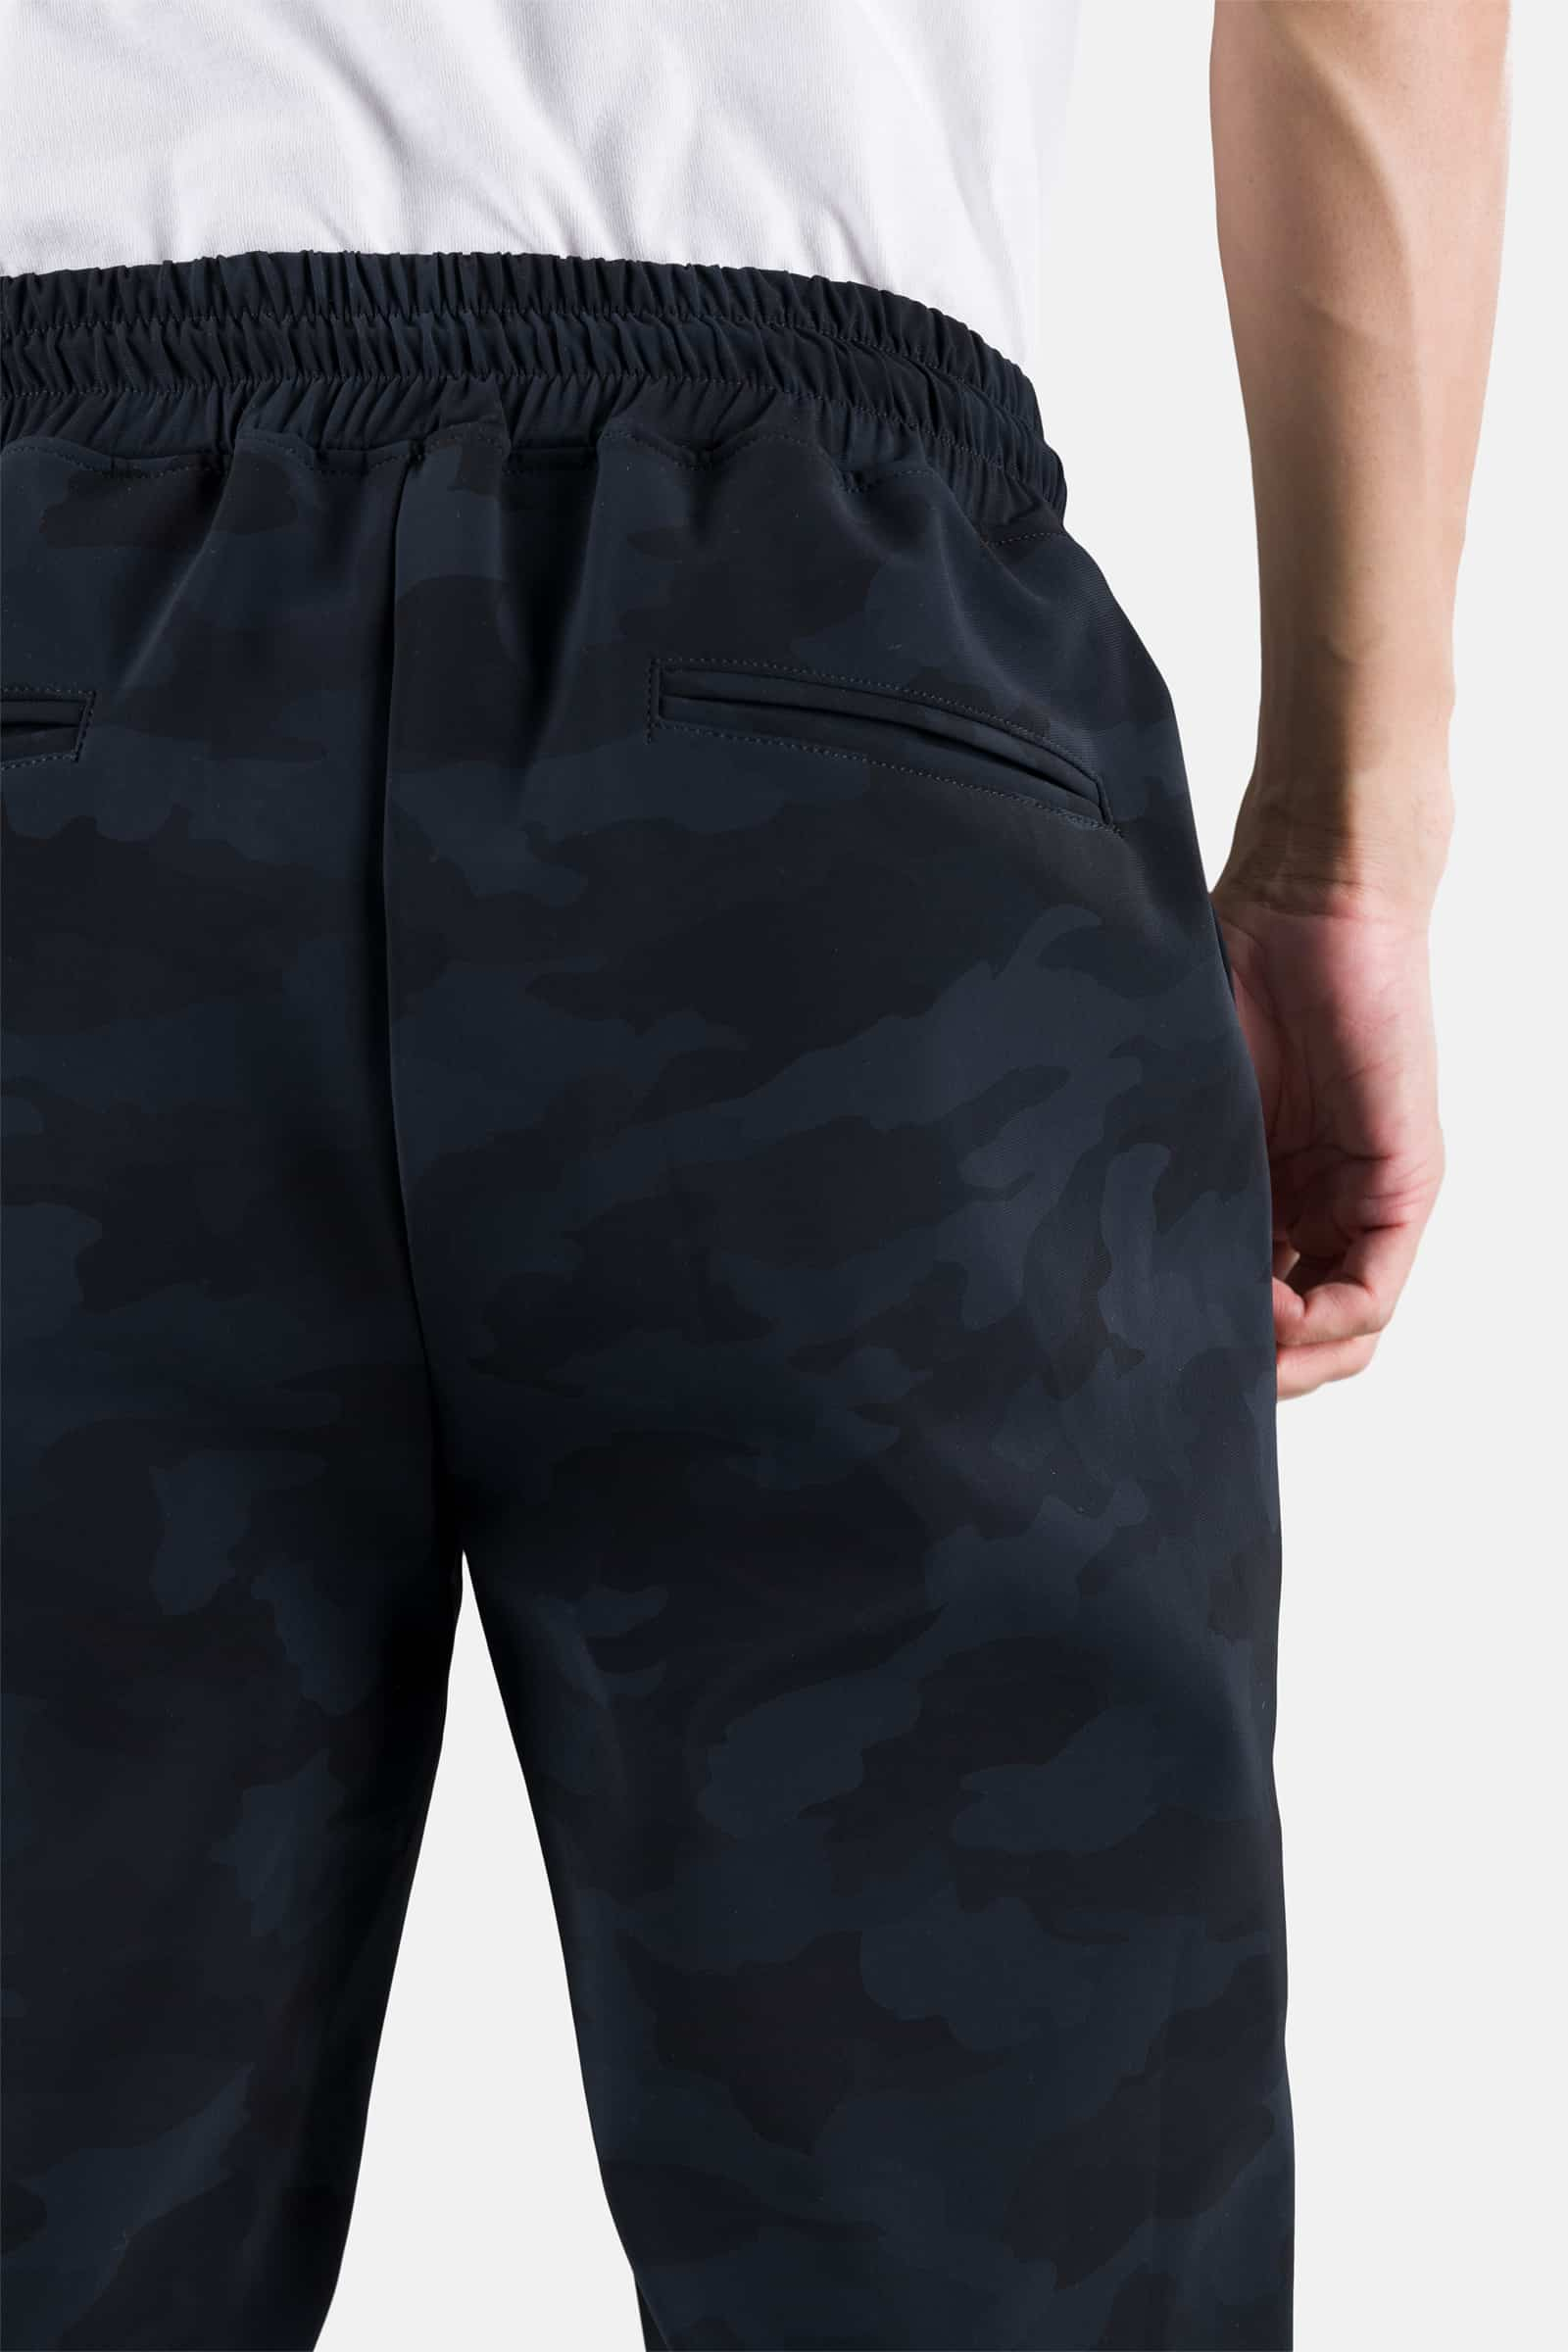 TRACKSUIT PANTS - BLACK CAMOUFLAGE - Hydrogen - Luxury Sportwear